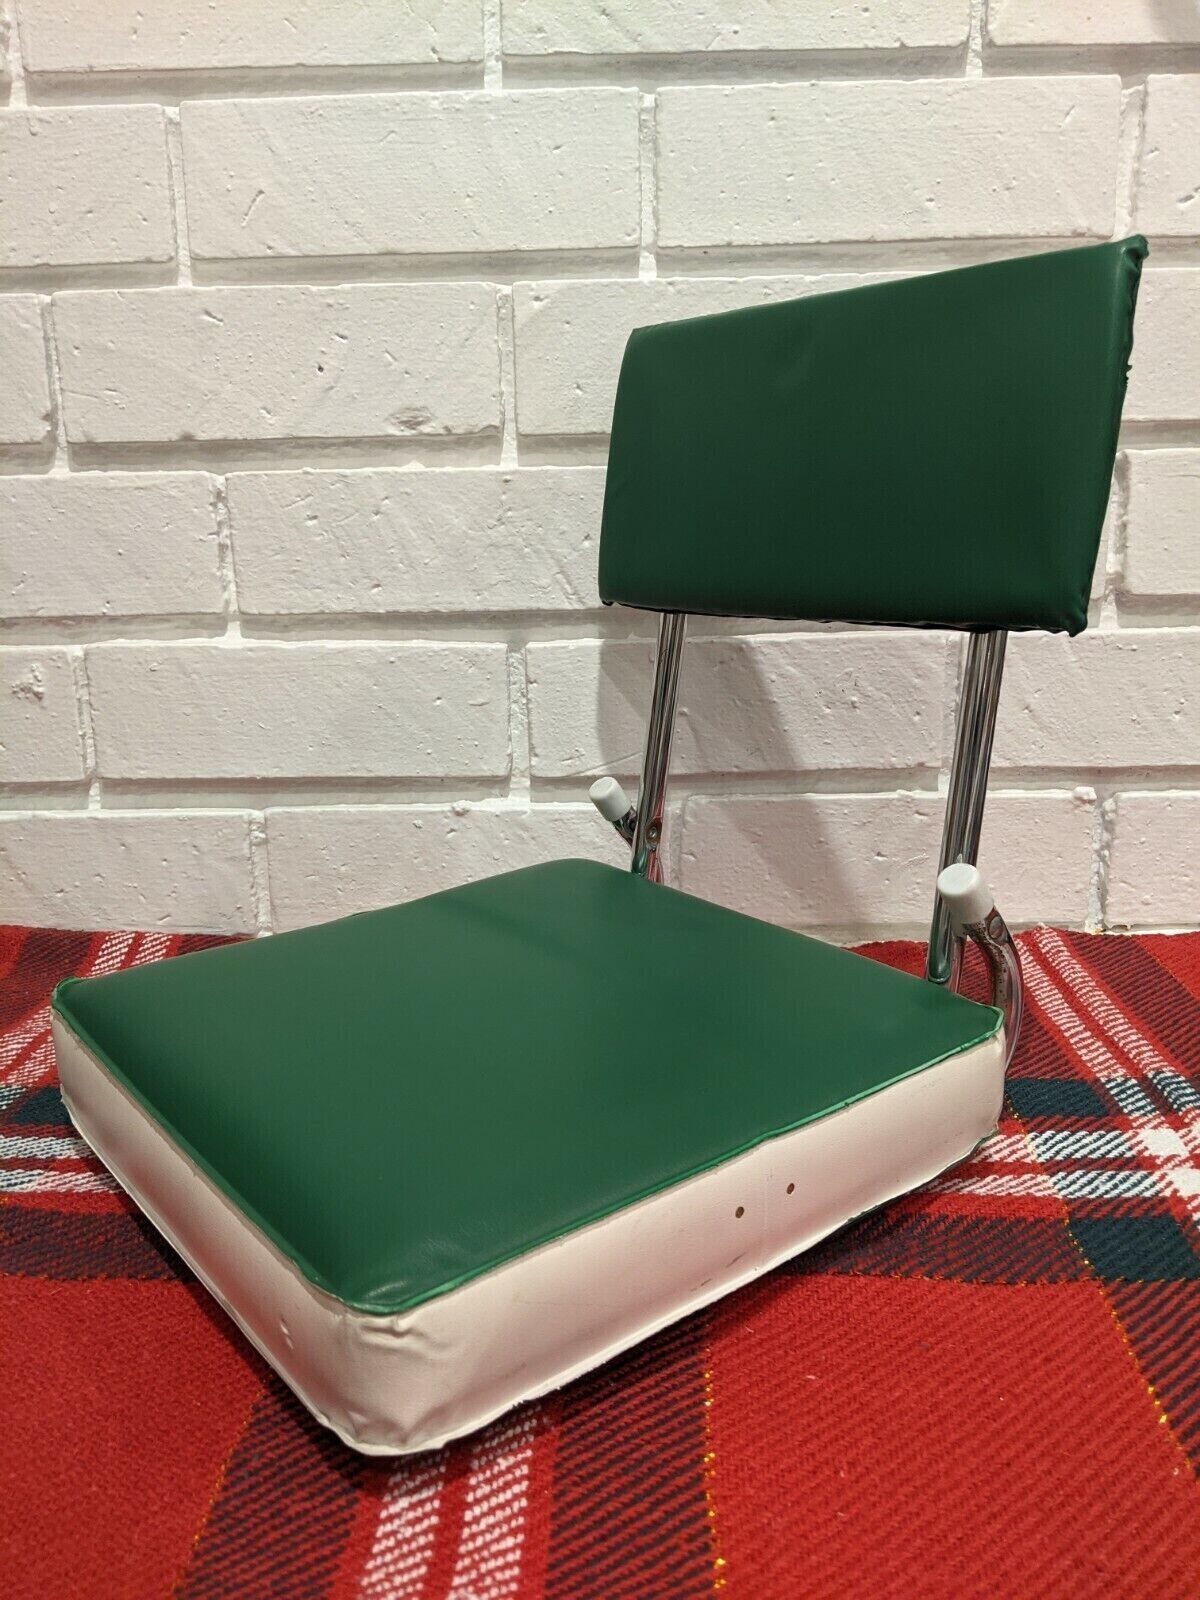 Vintage STADIUM SEAT Green Folding Cushion Spring Clamp Metal frame